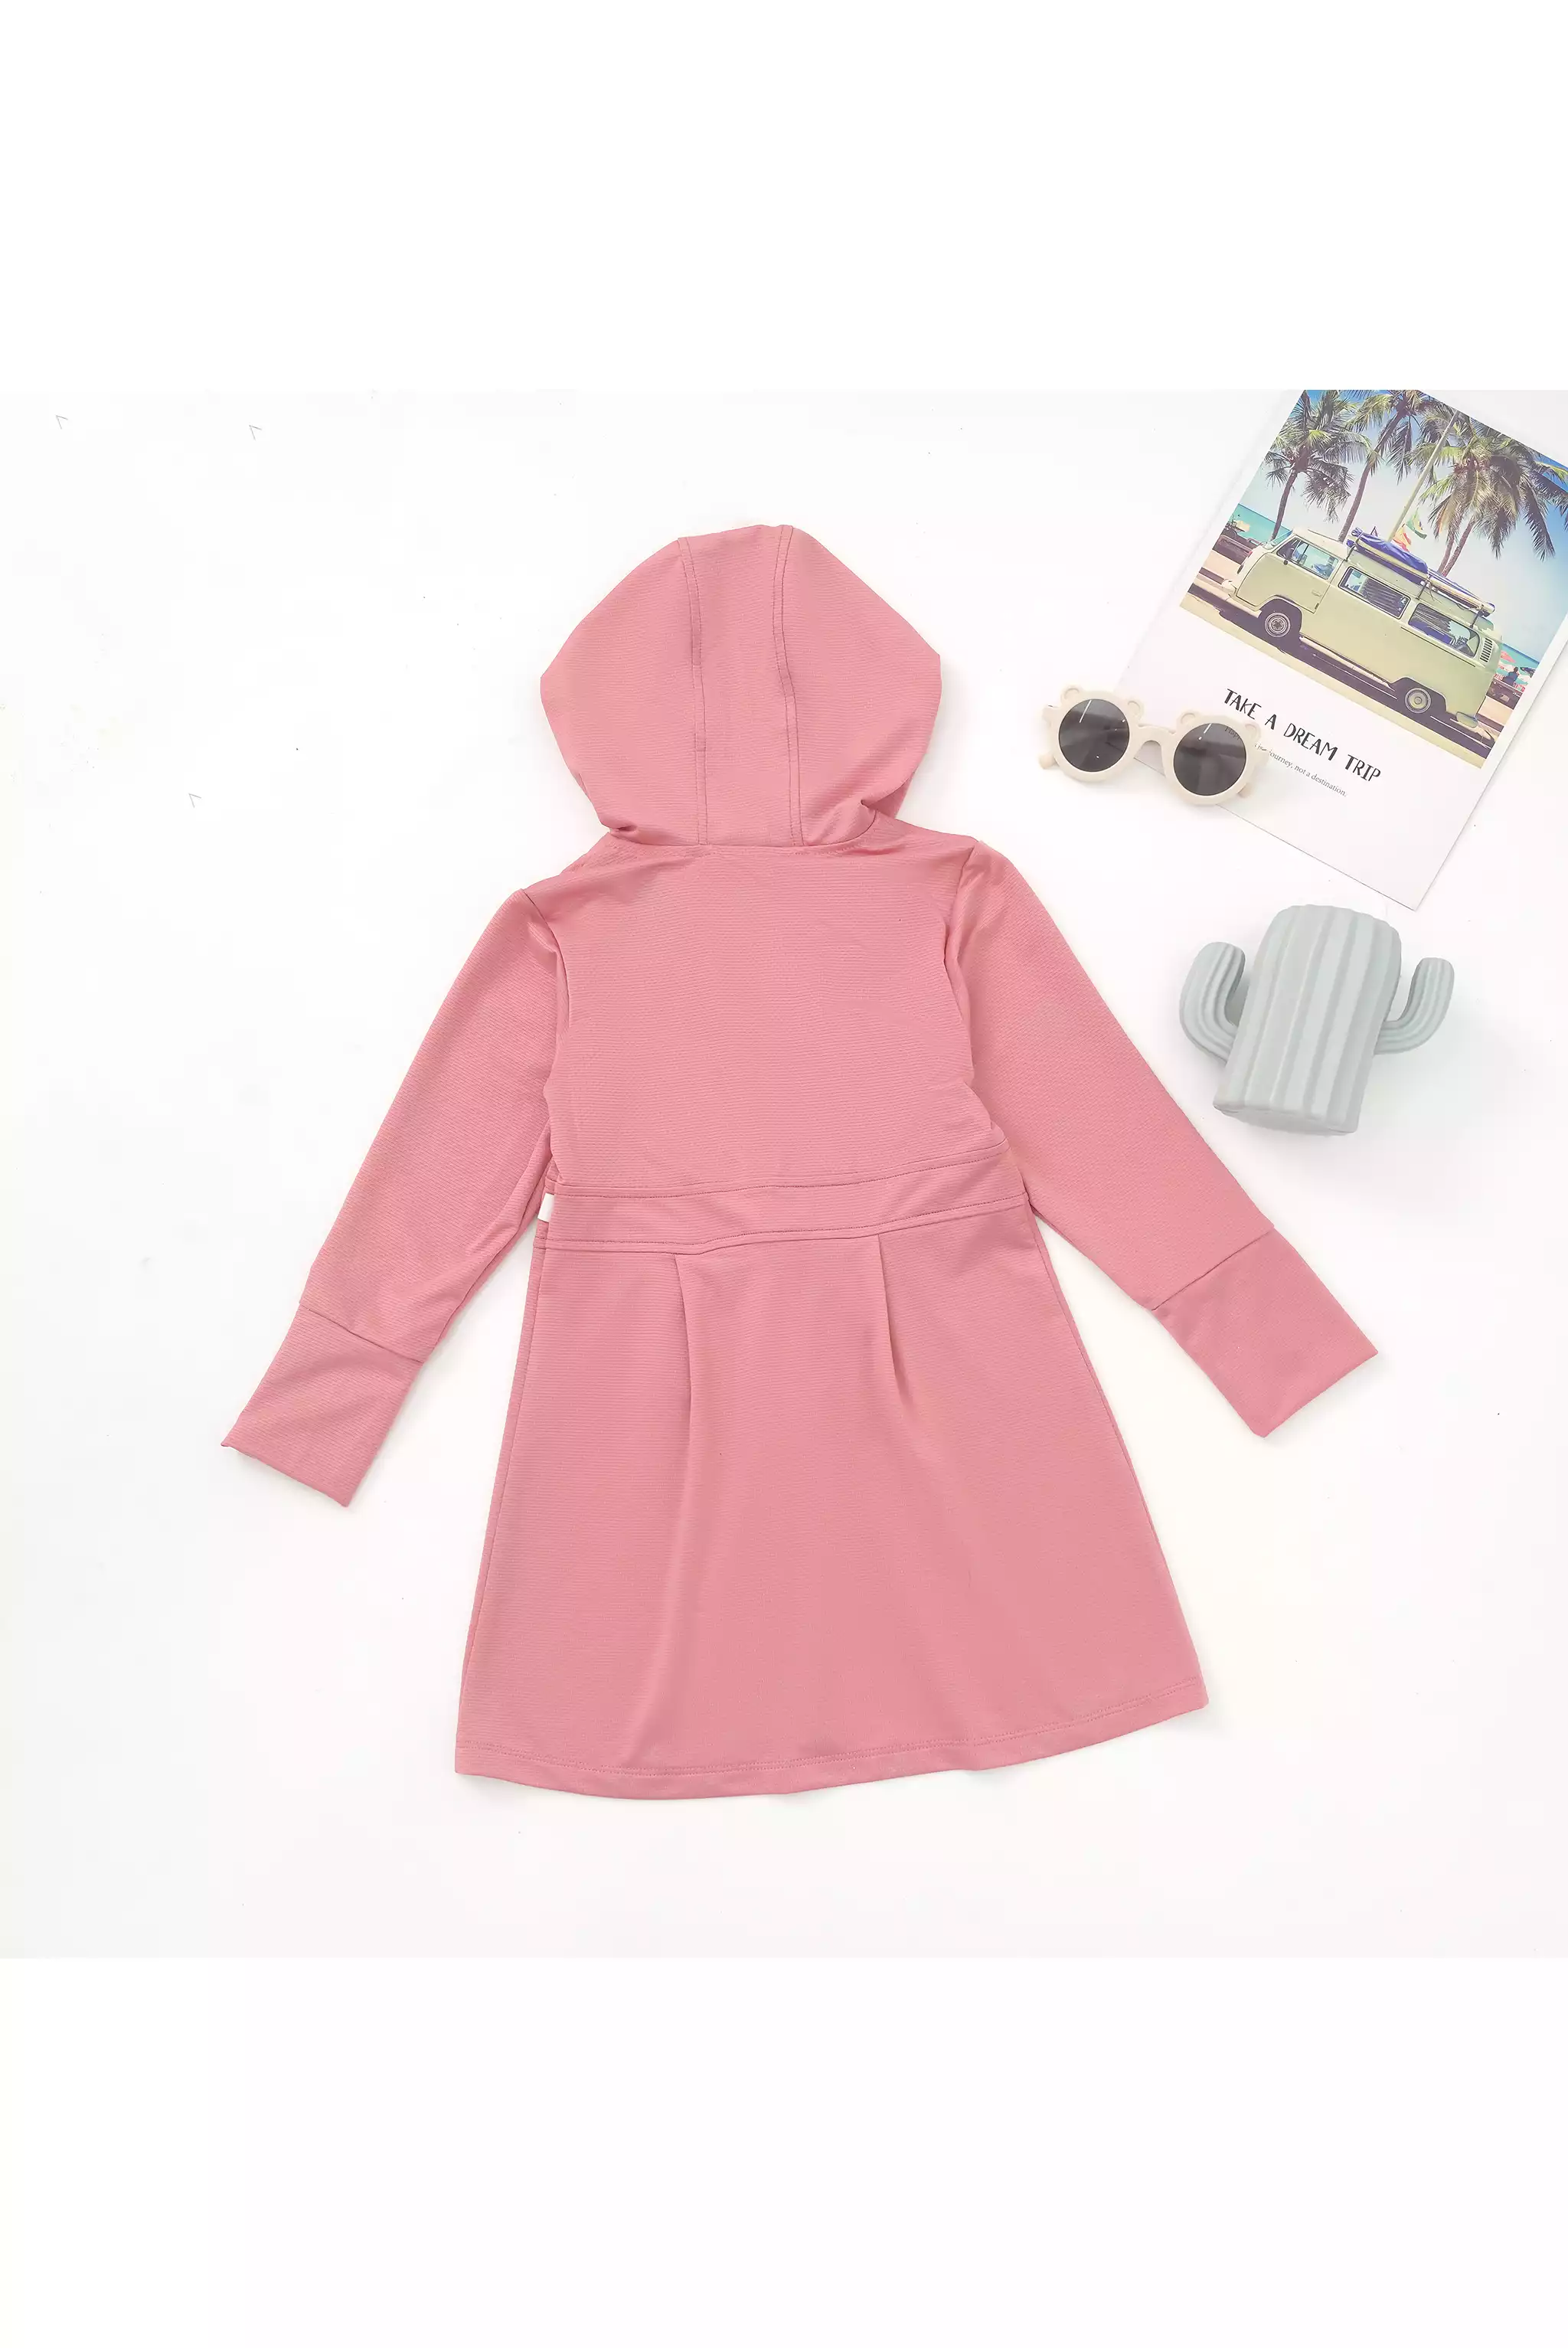 Top 8 mẫu áo khoác chống nắng đáng mua nhất cho chị em nghiền Shopee -  Beaudy.vn